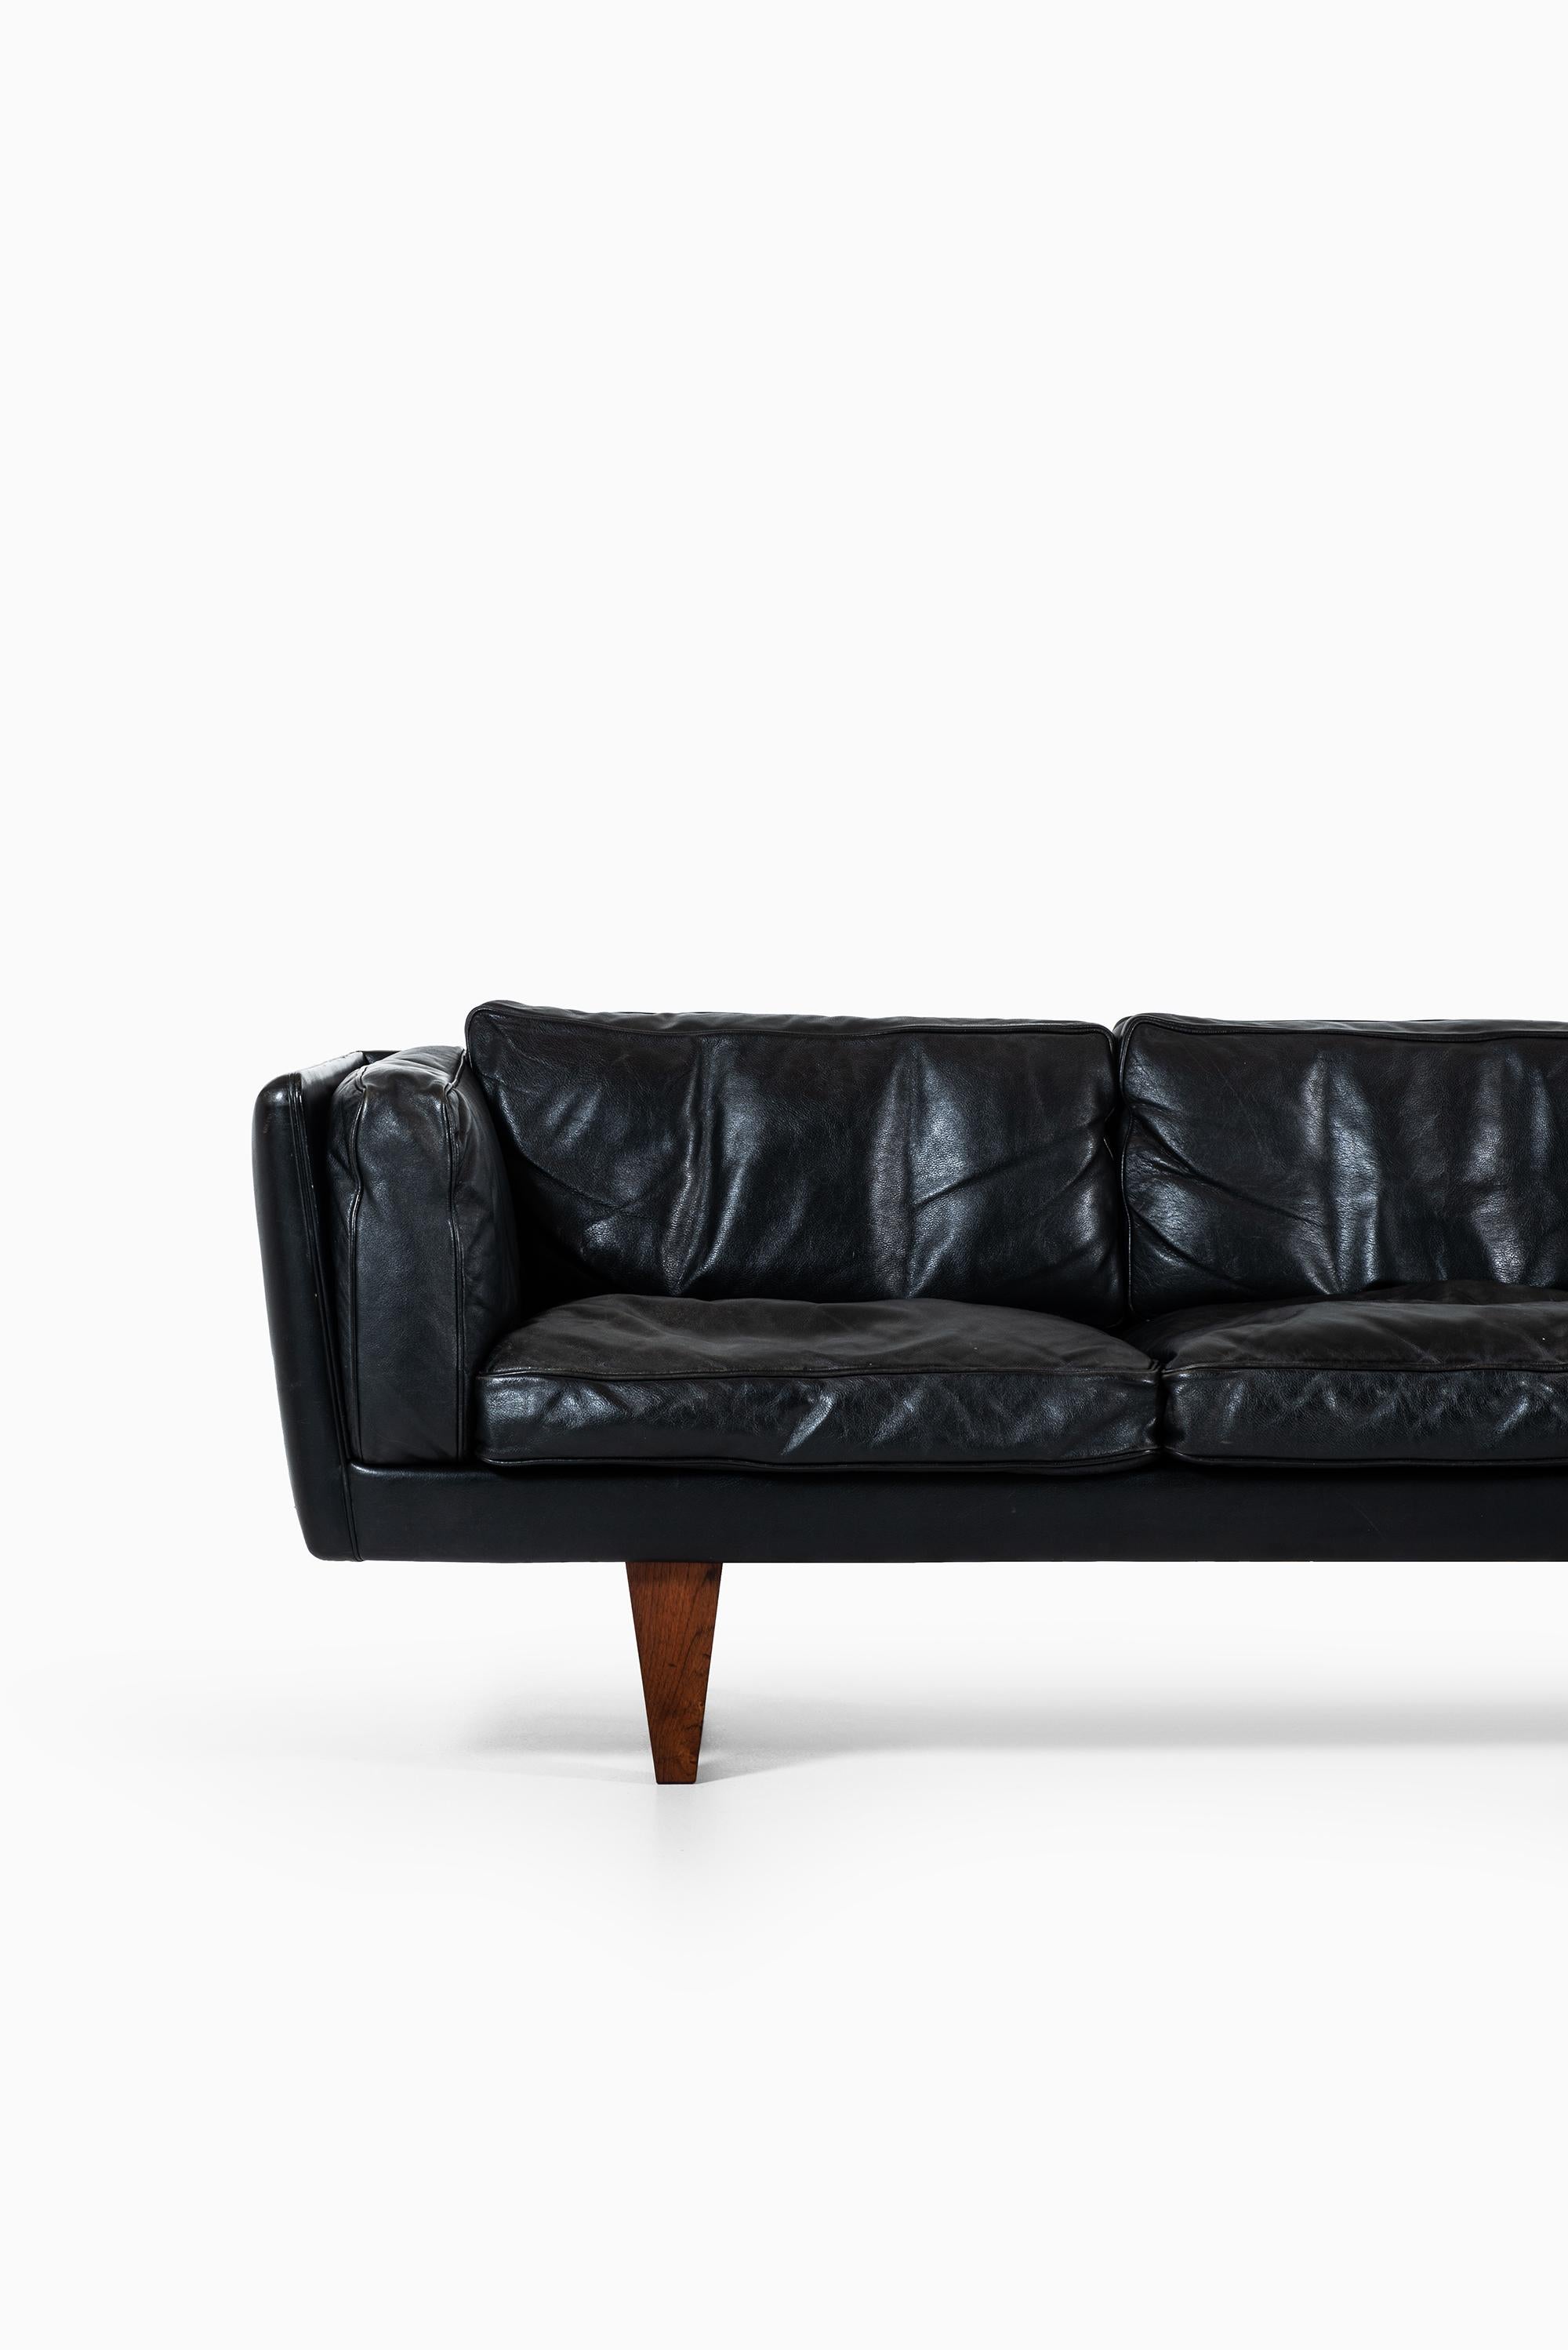 Very rare sofa model V11 designed by Illum Wikkelsø. Produced by Holger Christiansen in Denmark.